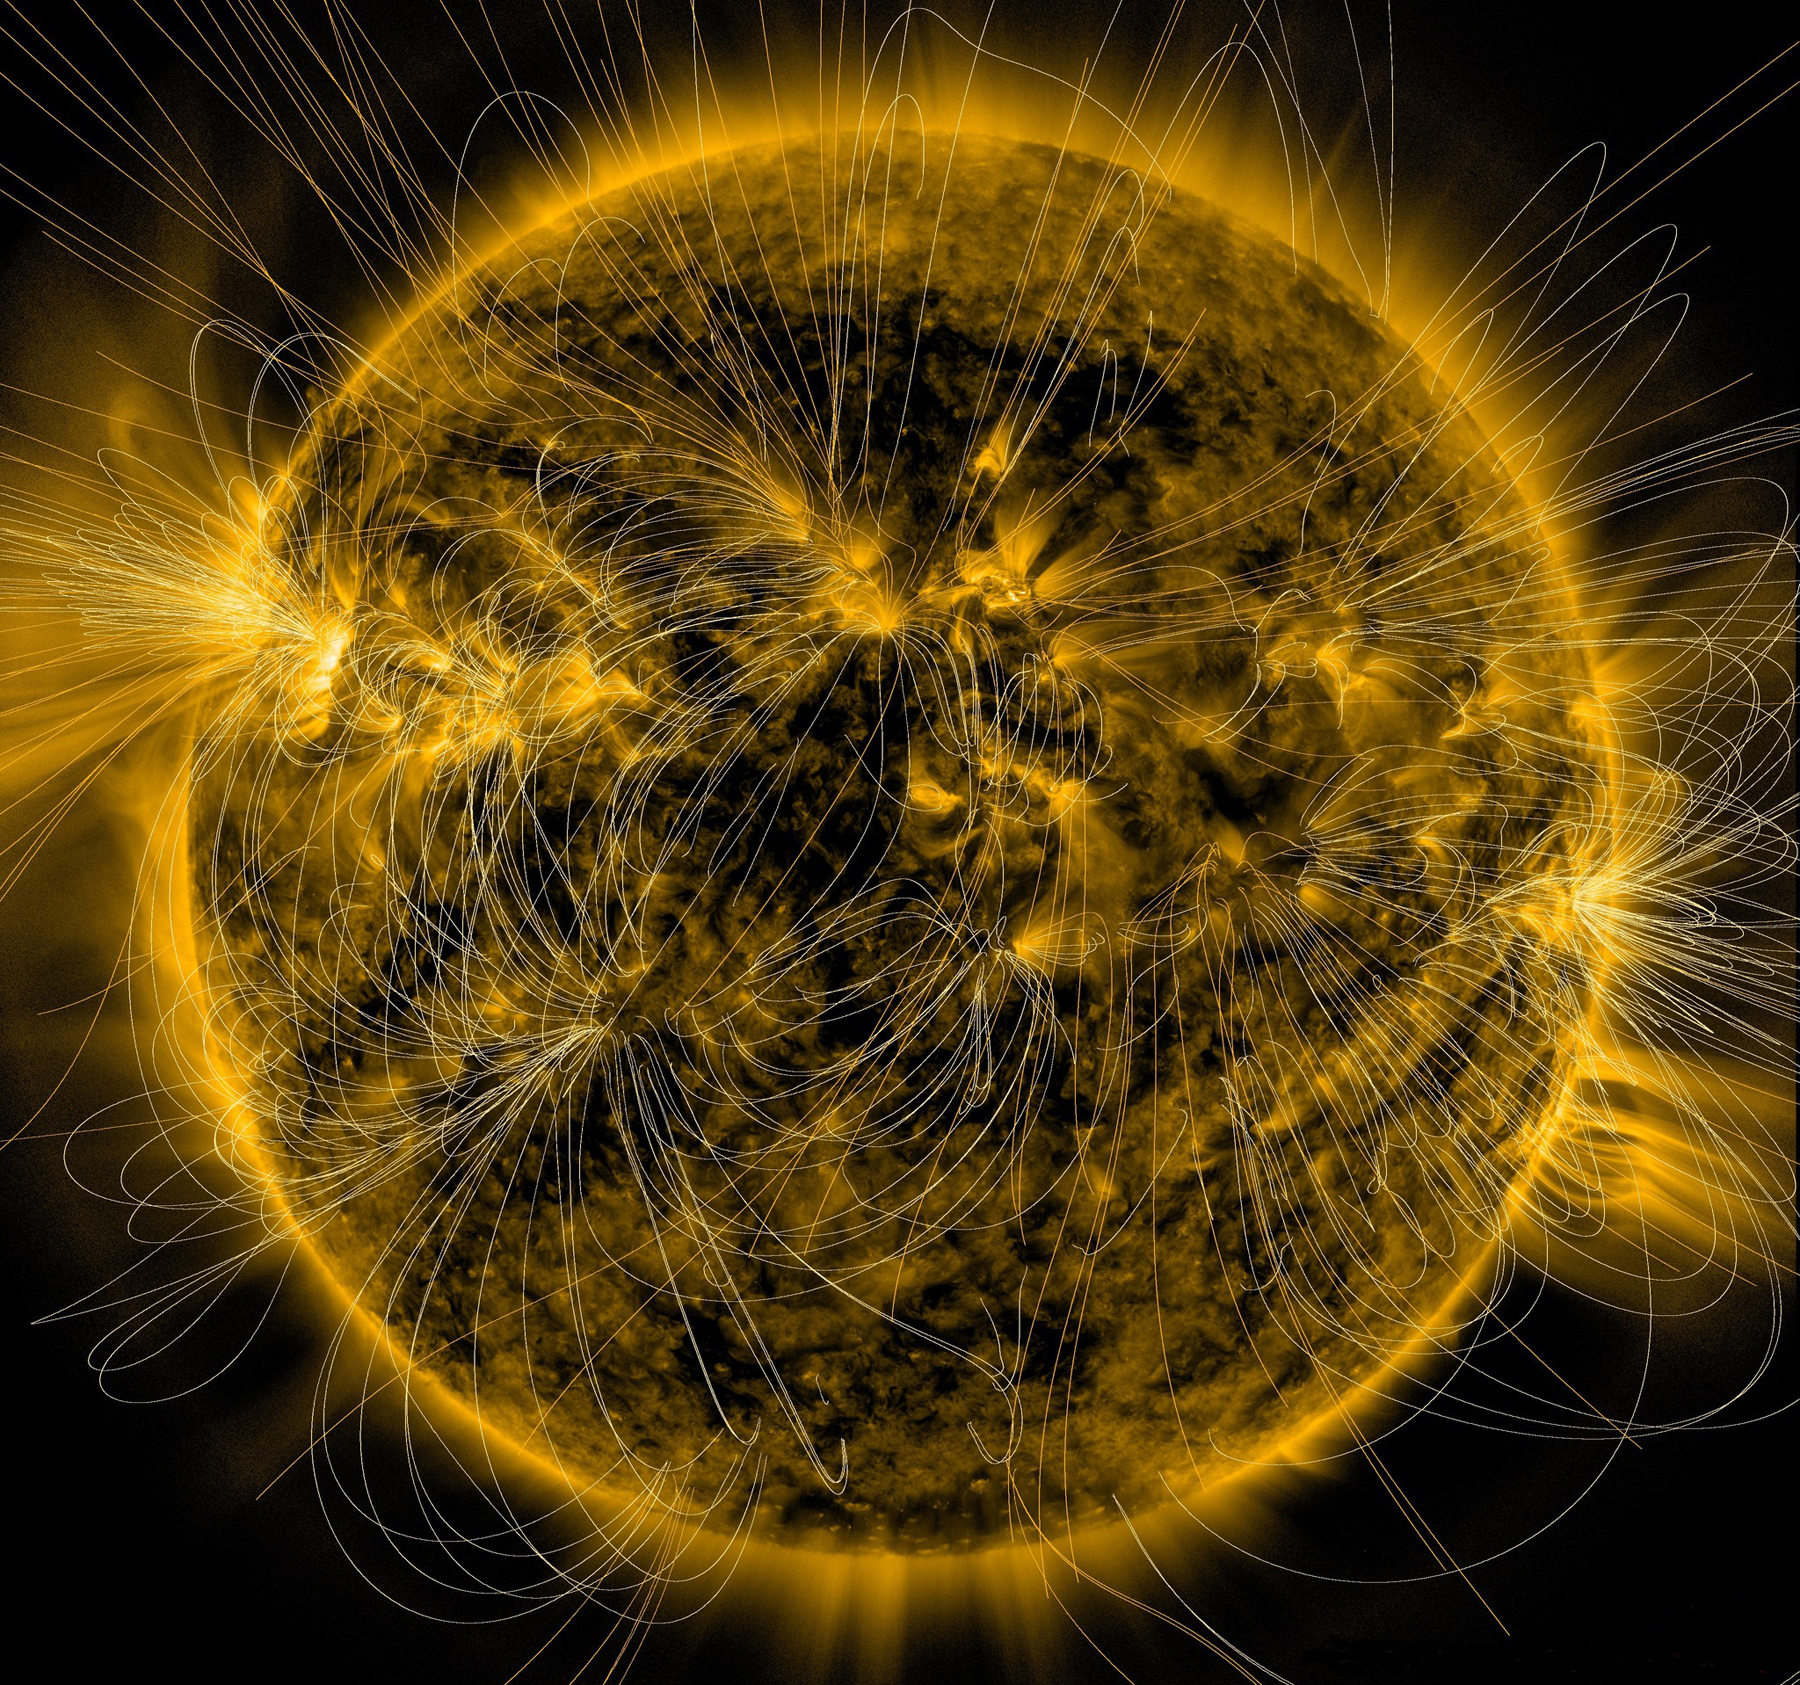 La couronne solaire s’étend sur des millions de kilomètres au-delà de la surface de notre Soleil. Elle apparaît un million de fois plus brillante que le disque solaire et sa température atteint les 3 millions de degrés. Et les champs magnétiques solaires semblent jouer un rôle essentiel de ce point de vue. © Nasa, SDO